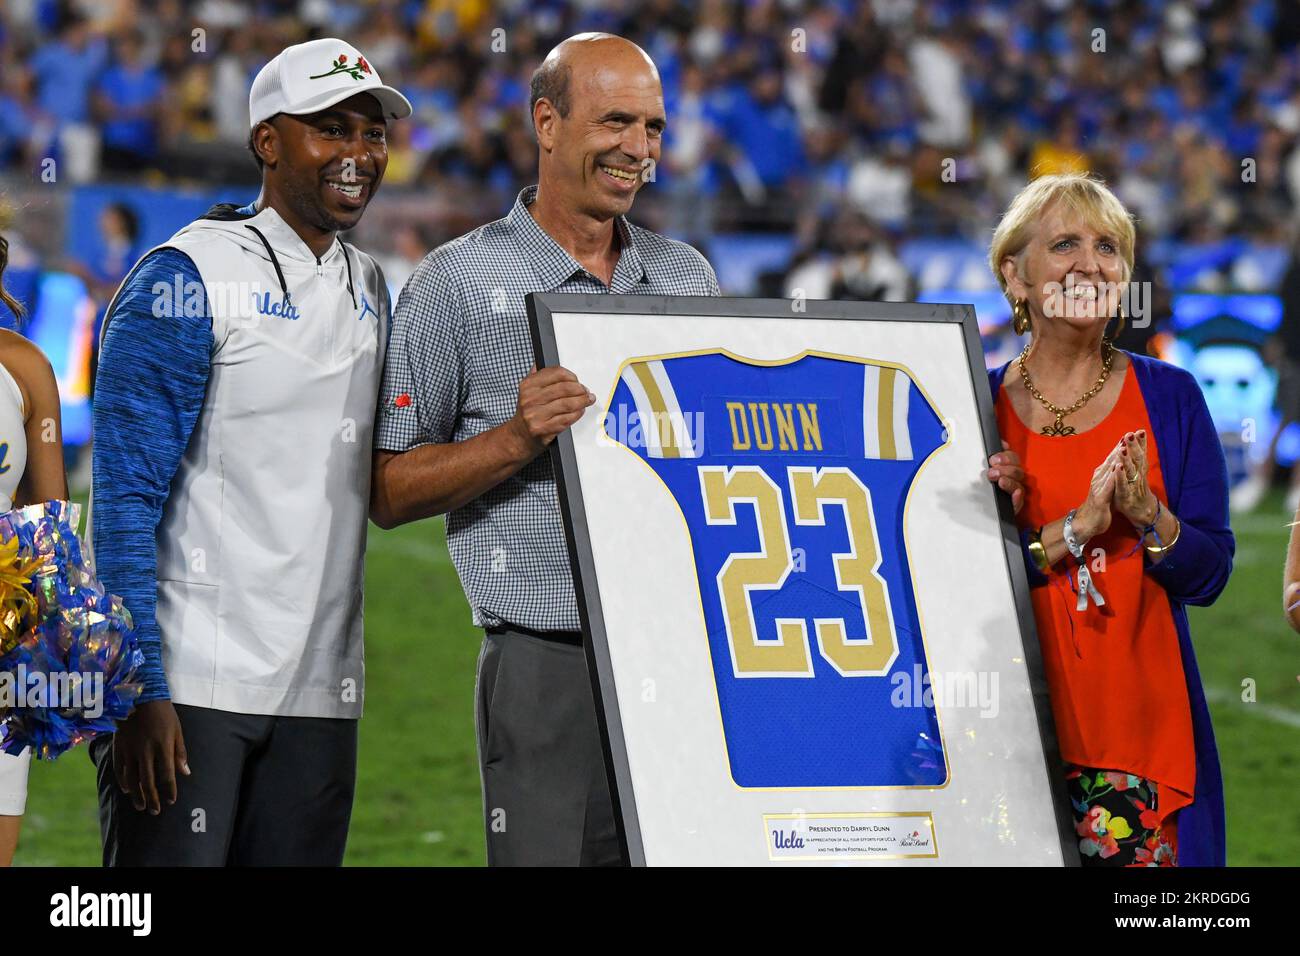 L'ancien PDG du Rose Bowl Stadium Darryl Dunn est honoré lors d'un match de football de la NCAA entre les Bruins de l'UCLA et les Huskies de Washington, le vendredi 3 septembre Banque D'Images